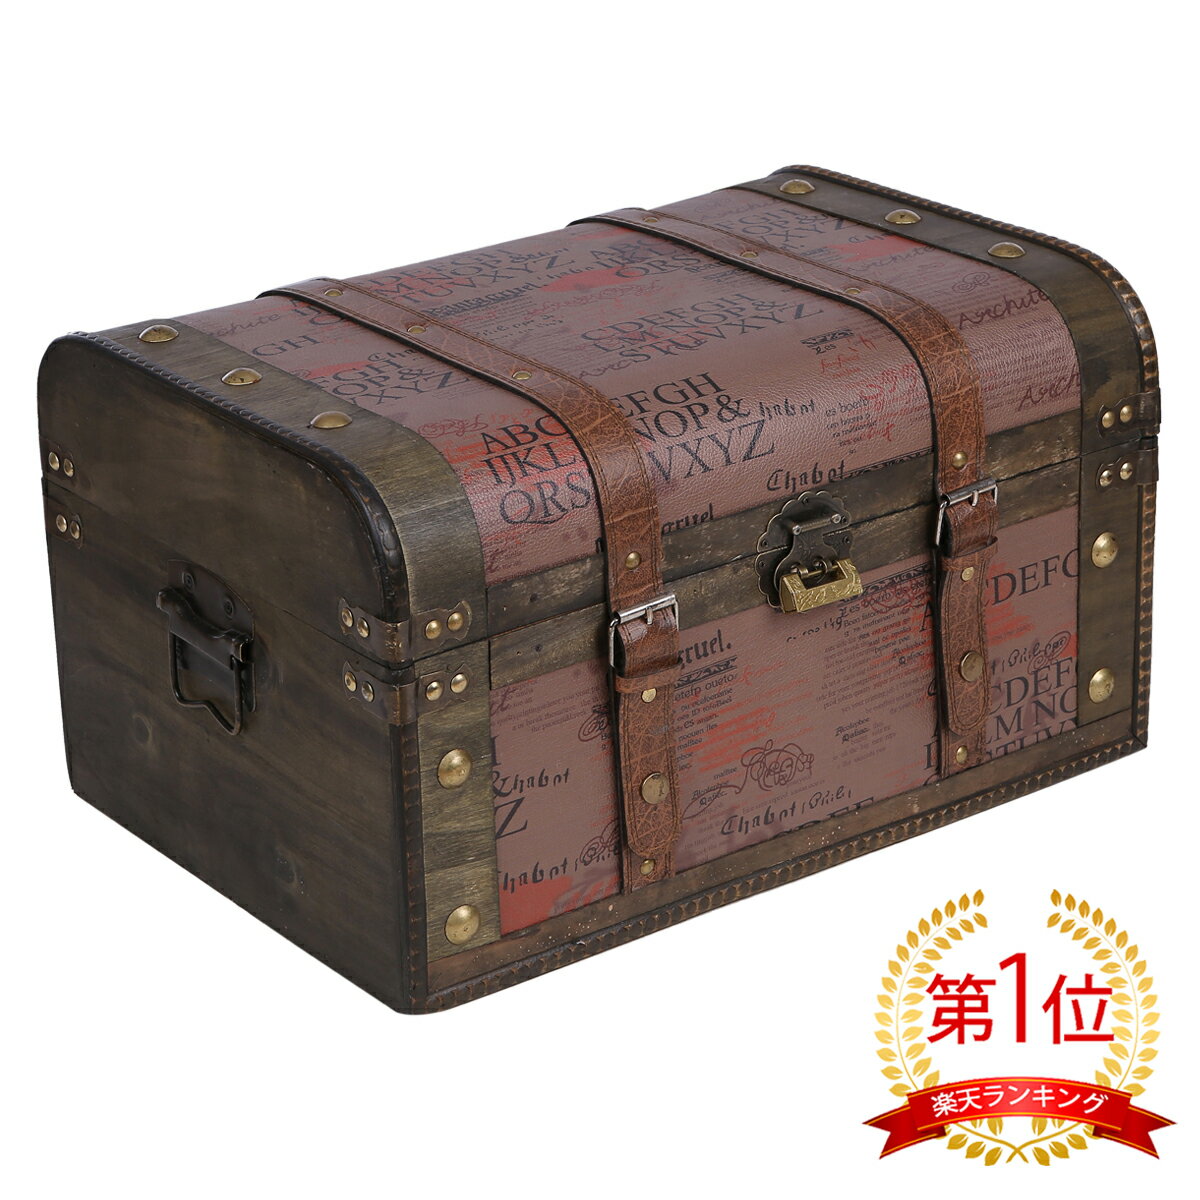 鍵付き 海賊木箱 アンティーク宝箱 大サイズ 横幅約45cm レトロ カリビアン 財宝 パイレーツ 収納箱